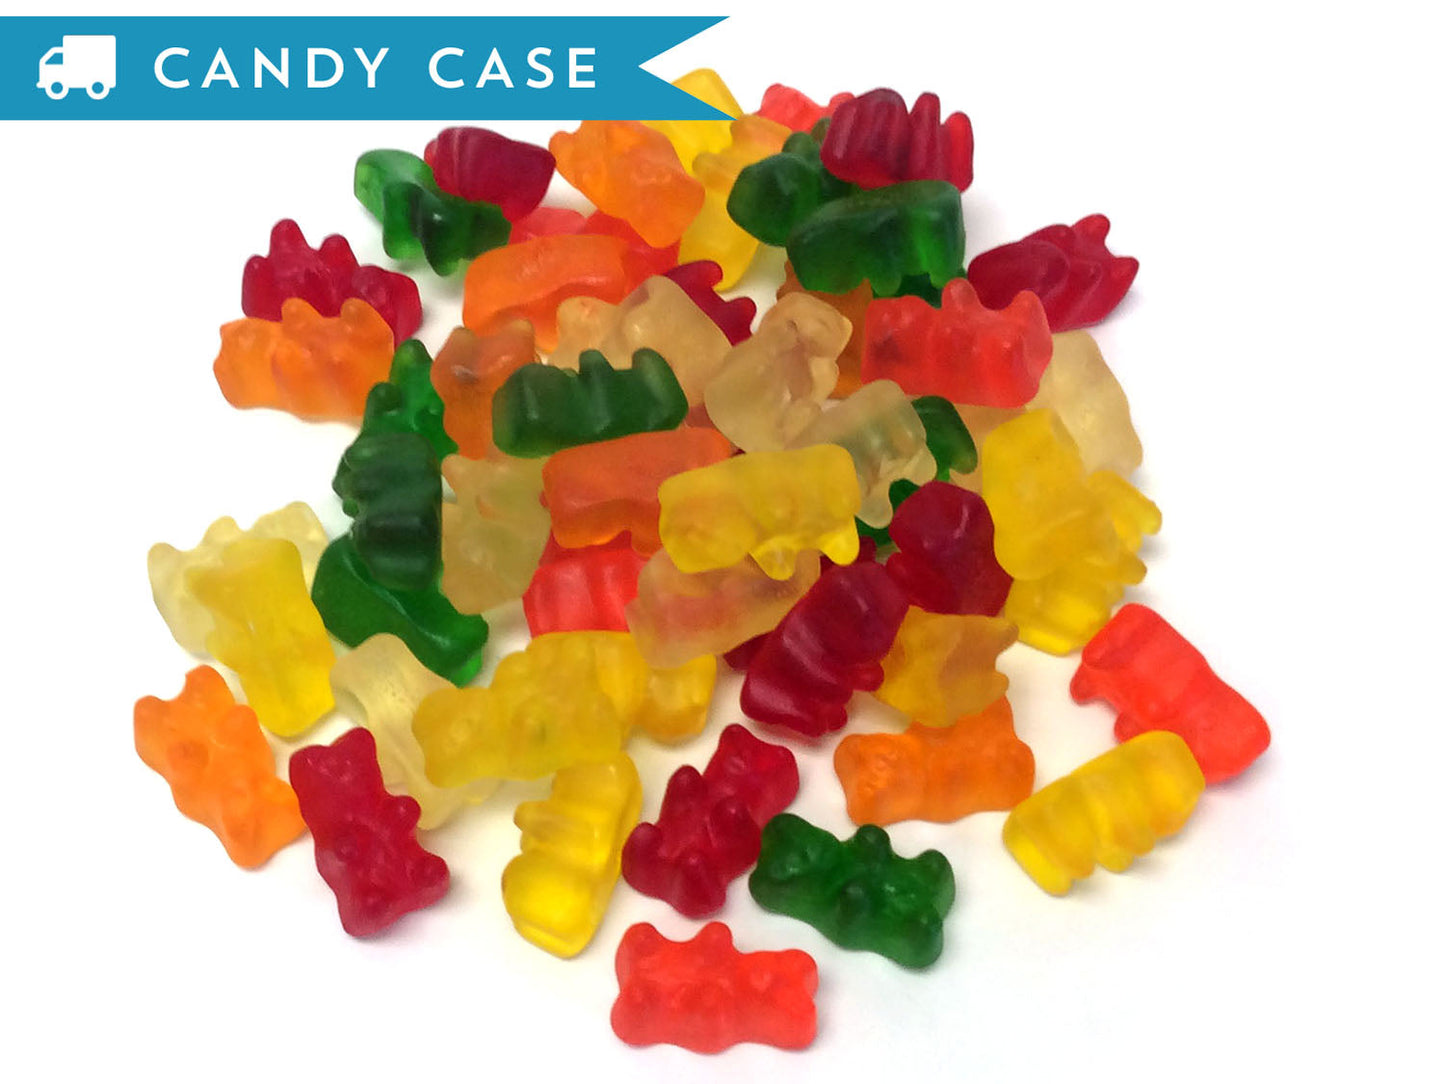 Gummi Bears - bulk 20 lb case